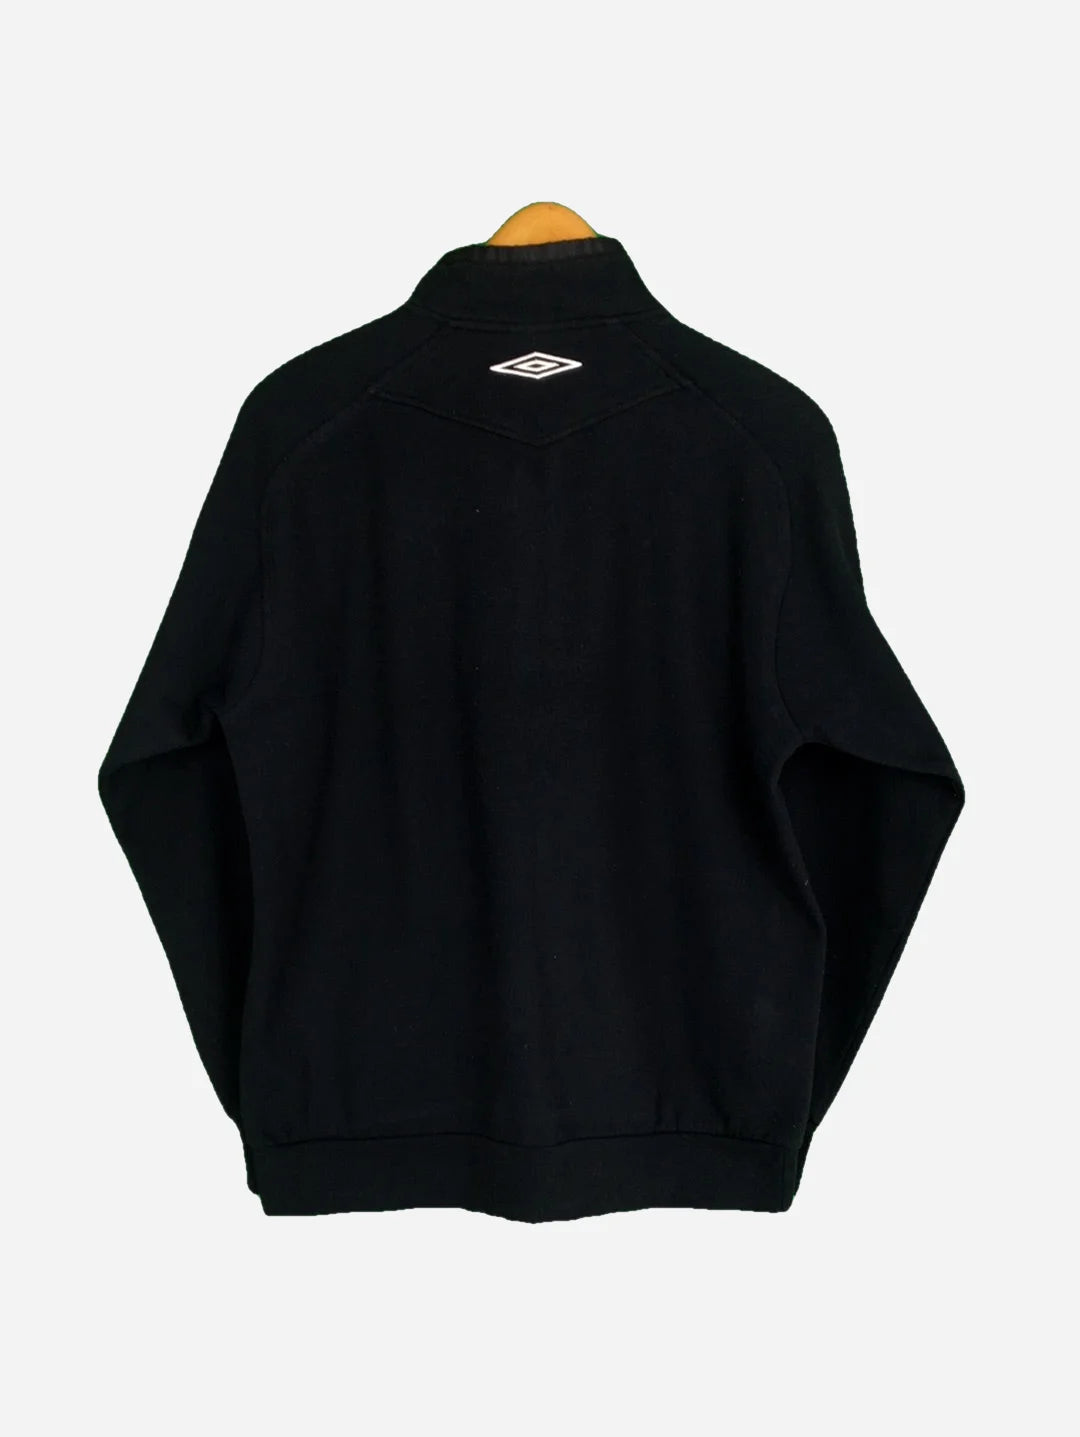 Umbro Sweater Jacke (S)